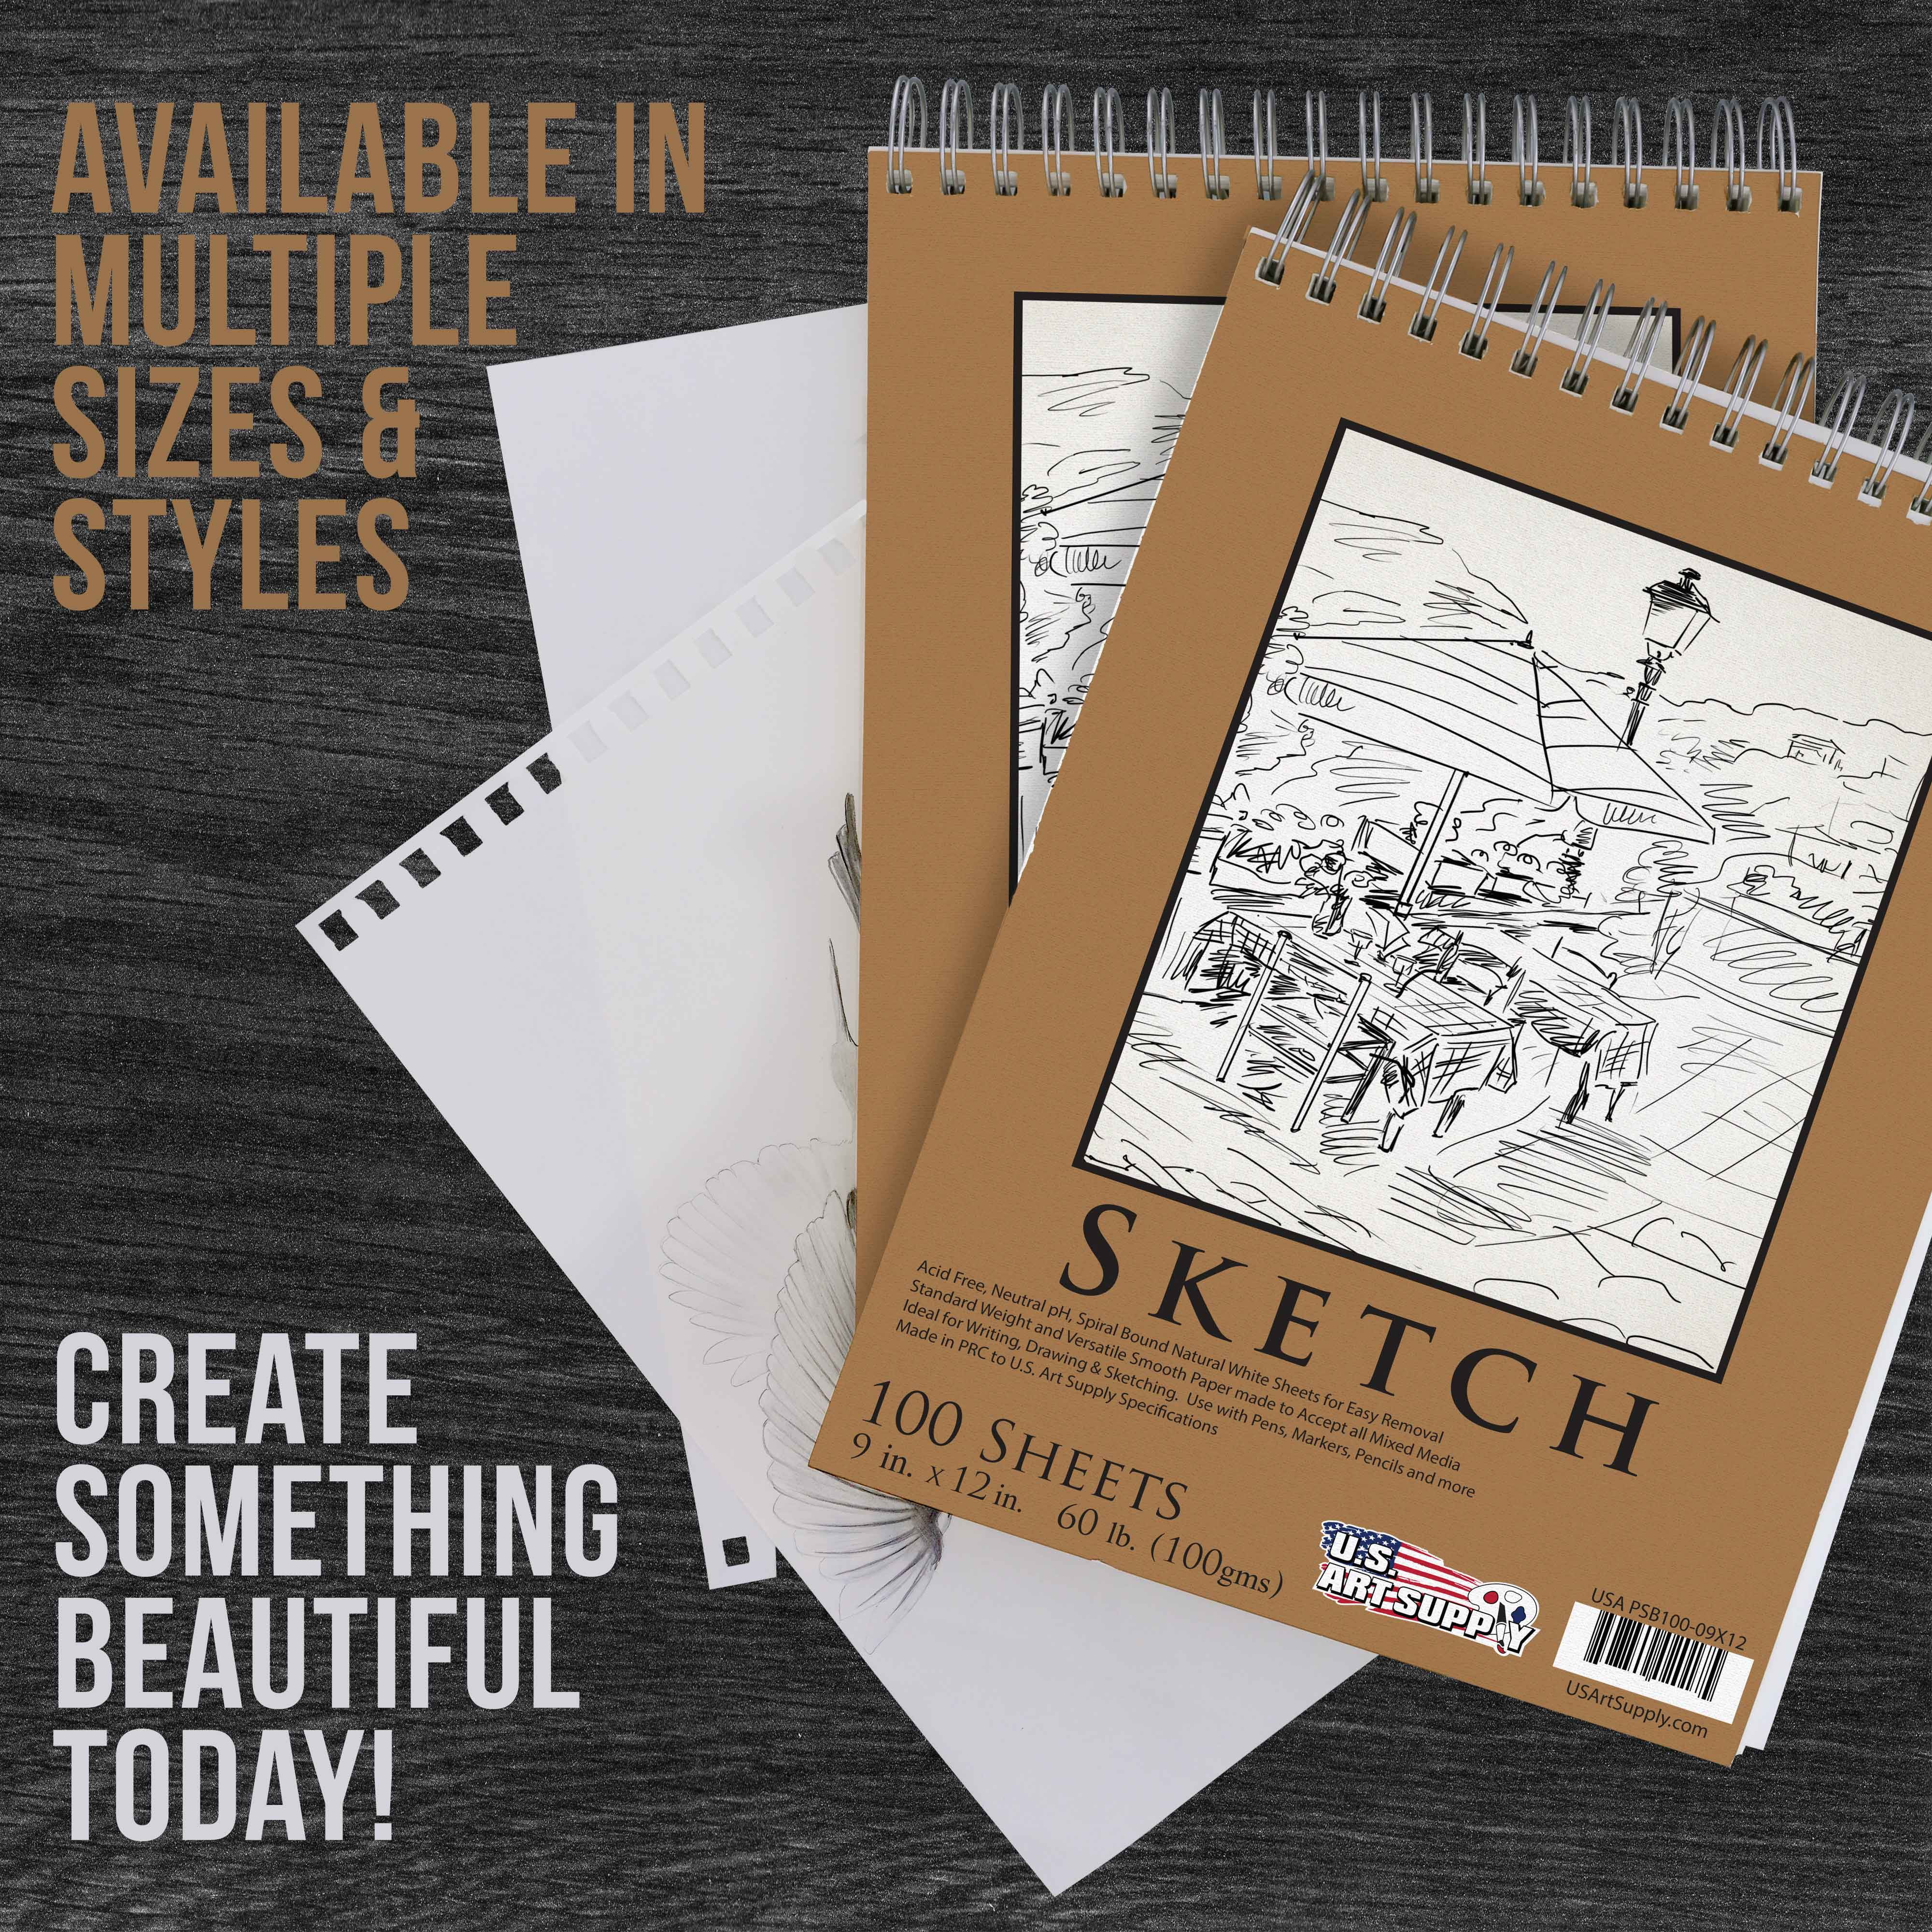 Sketch Bundle - 22-piece Sketch Set plus 60-page Sketch Pad